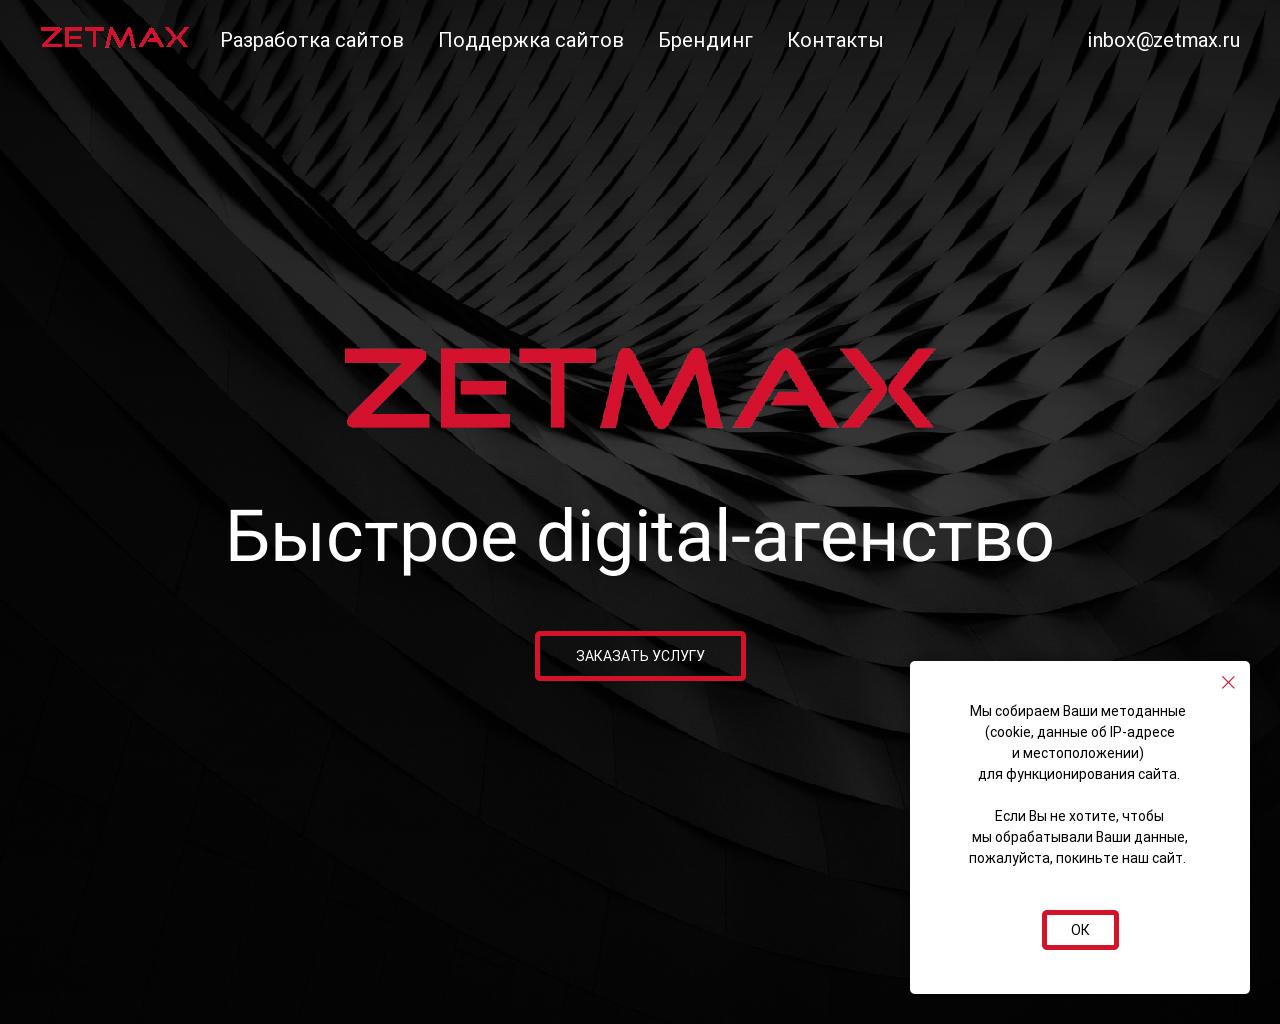 Изображение сайта zetmax.ru в разрешении 1280x1024